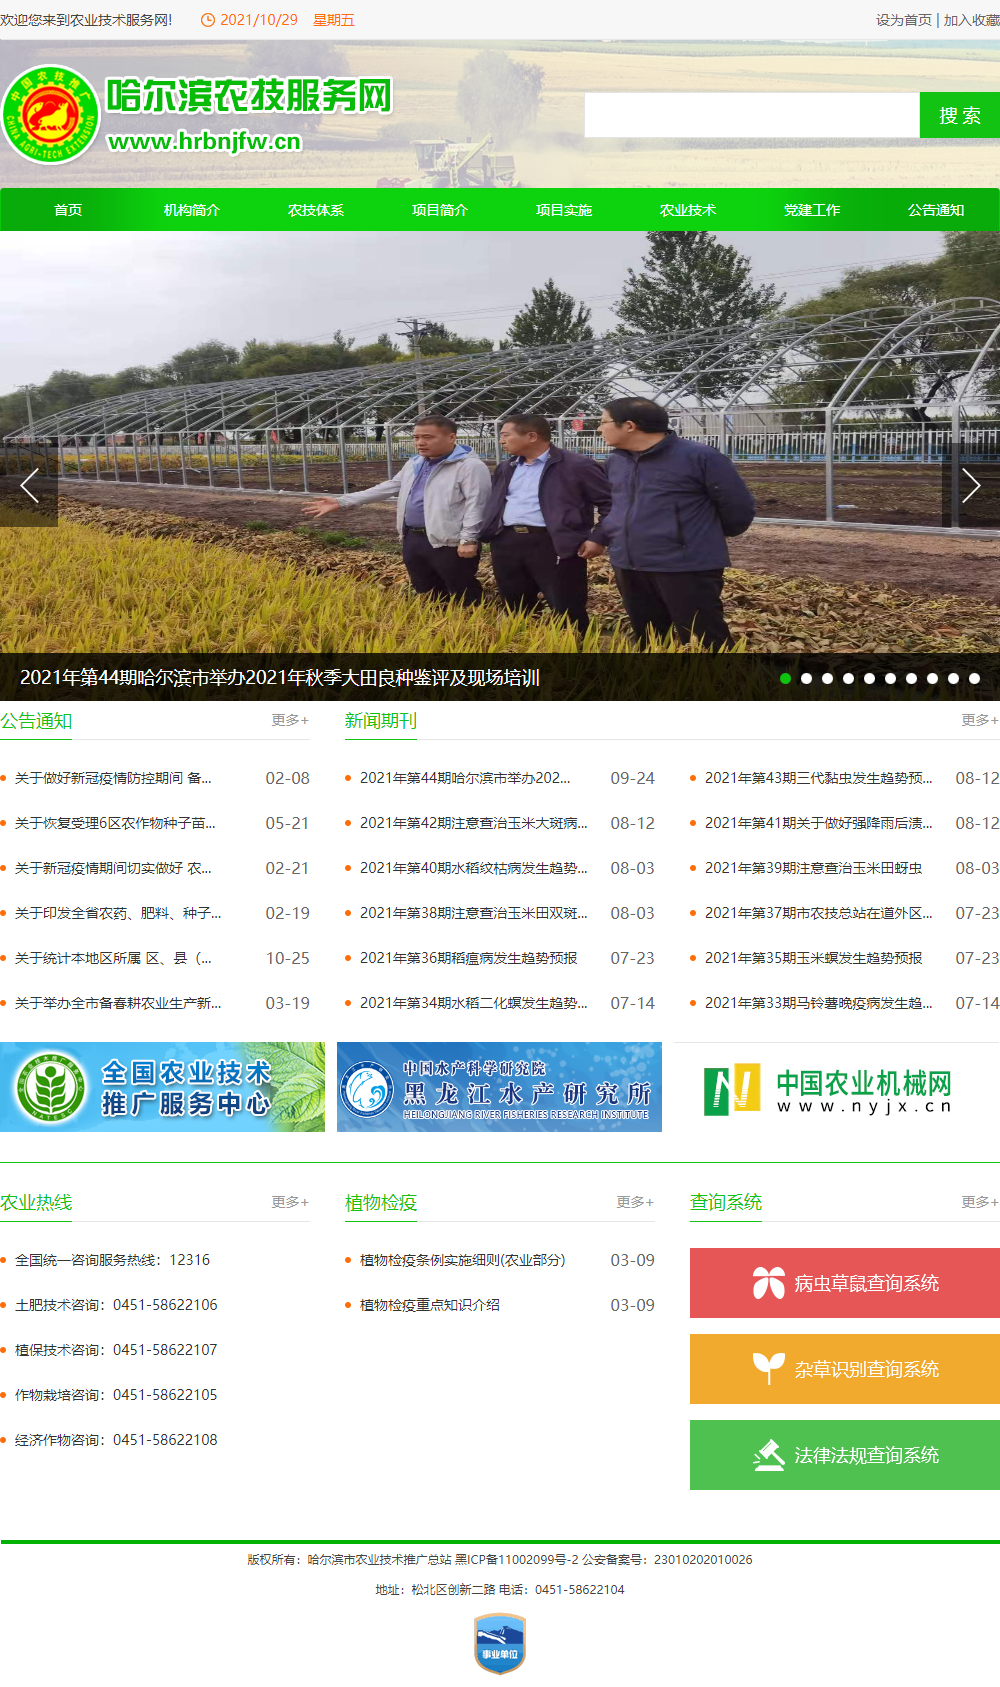 哈尔滨市农业技术推广服务中心网站案例